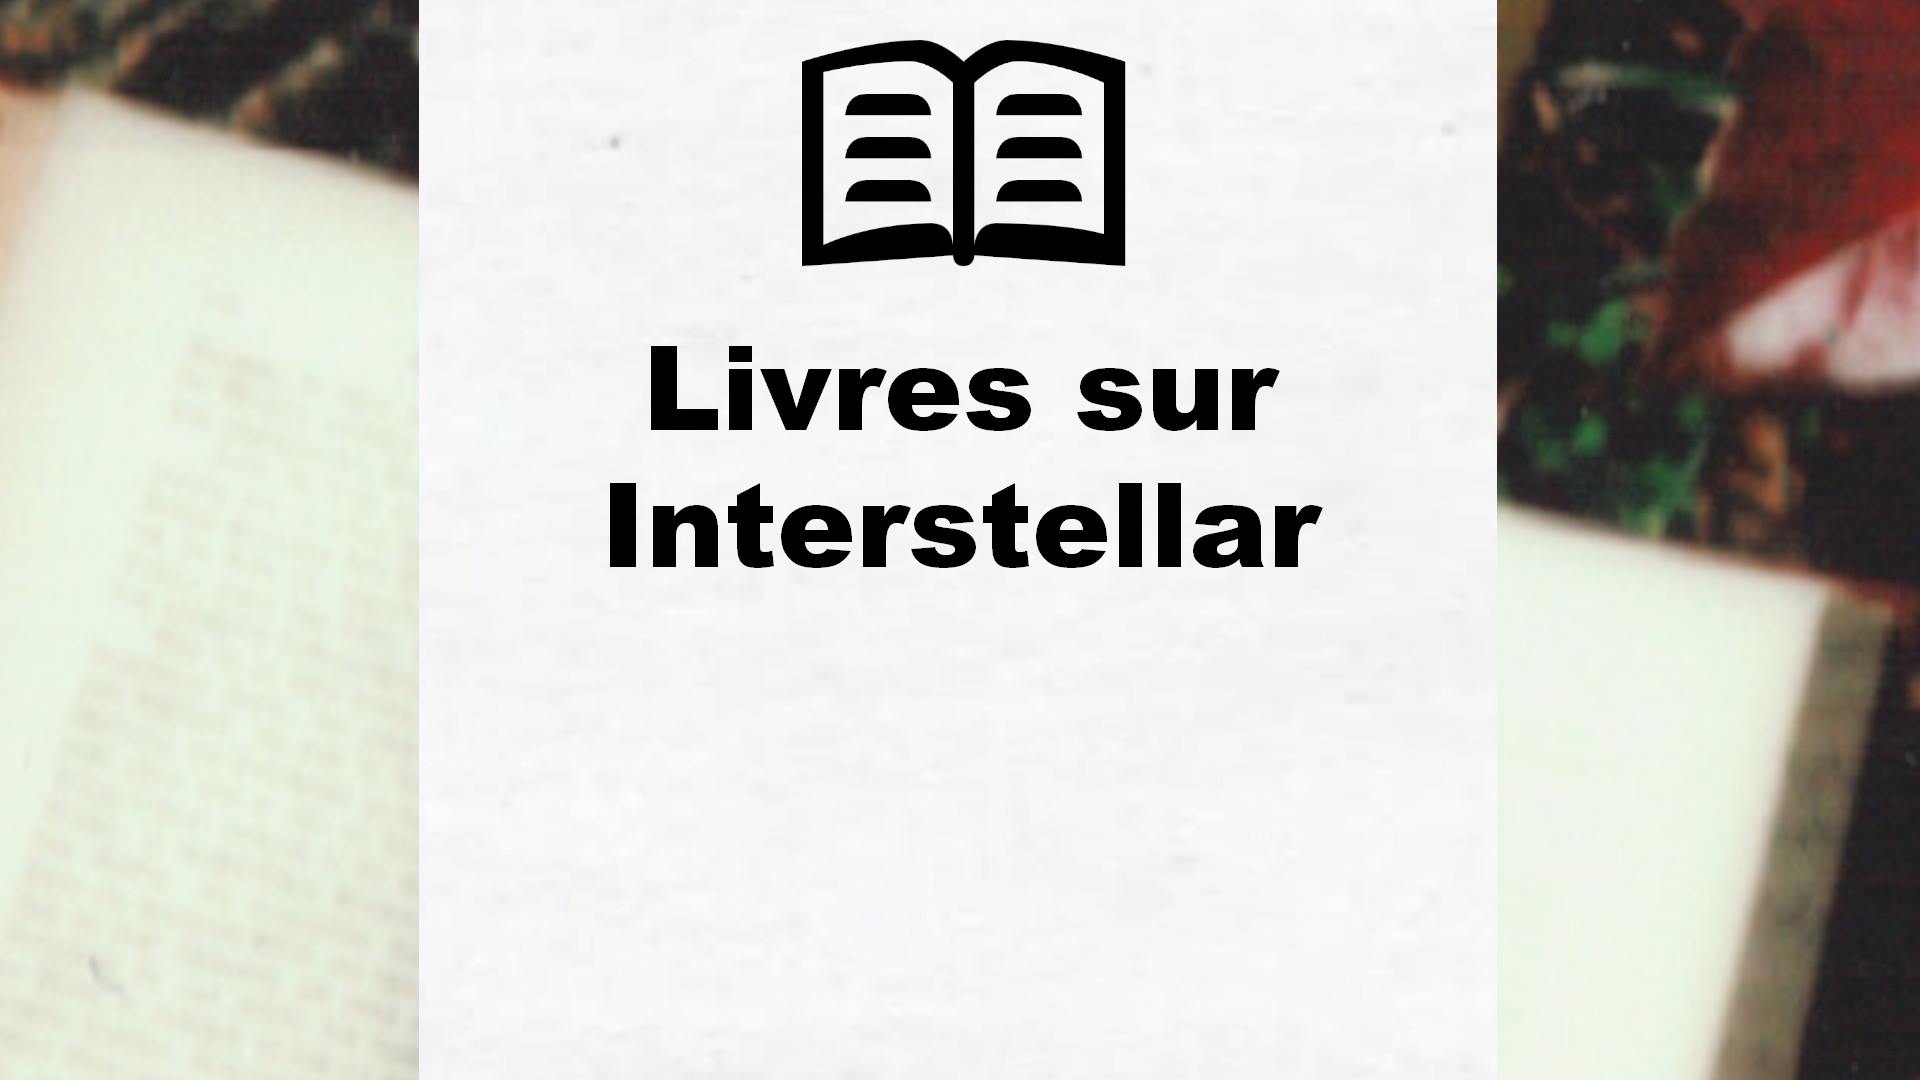 Livres sur Interstellar